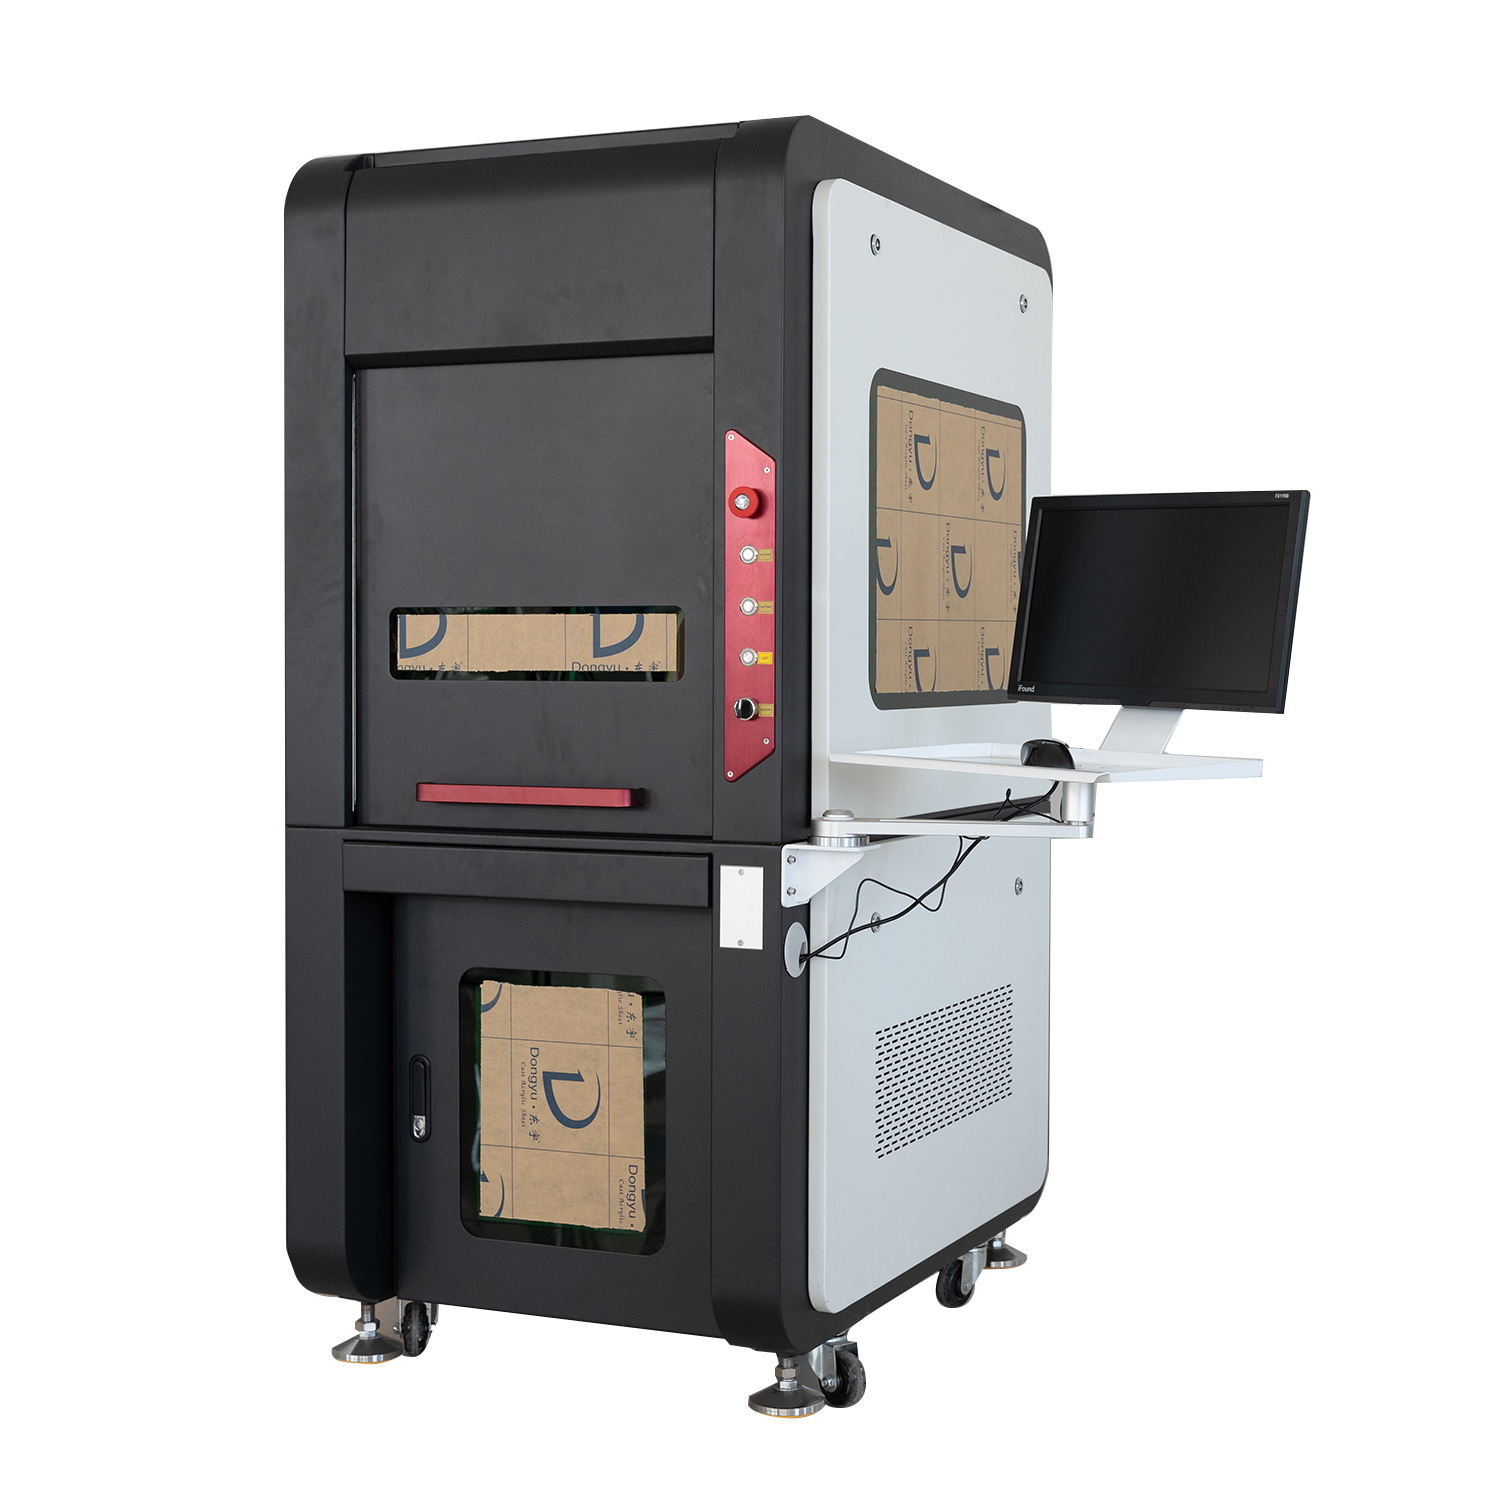 Hoge kwaliteit laser Raycus / MAX / JPT laserbron fiber lasermarkeermachines 20w 30w 50w